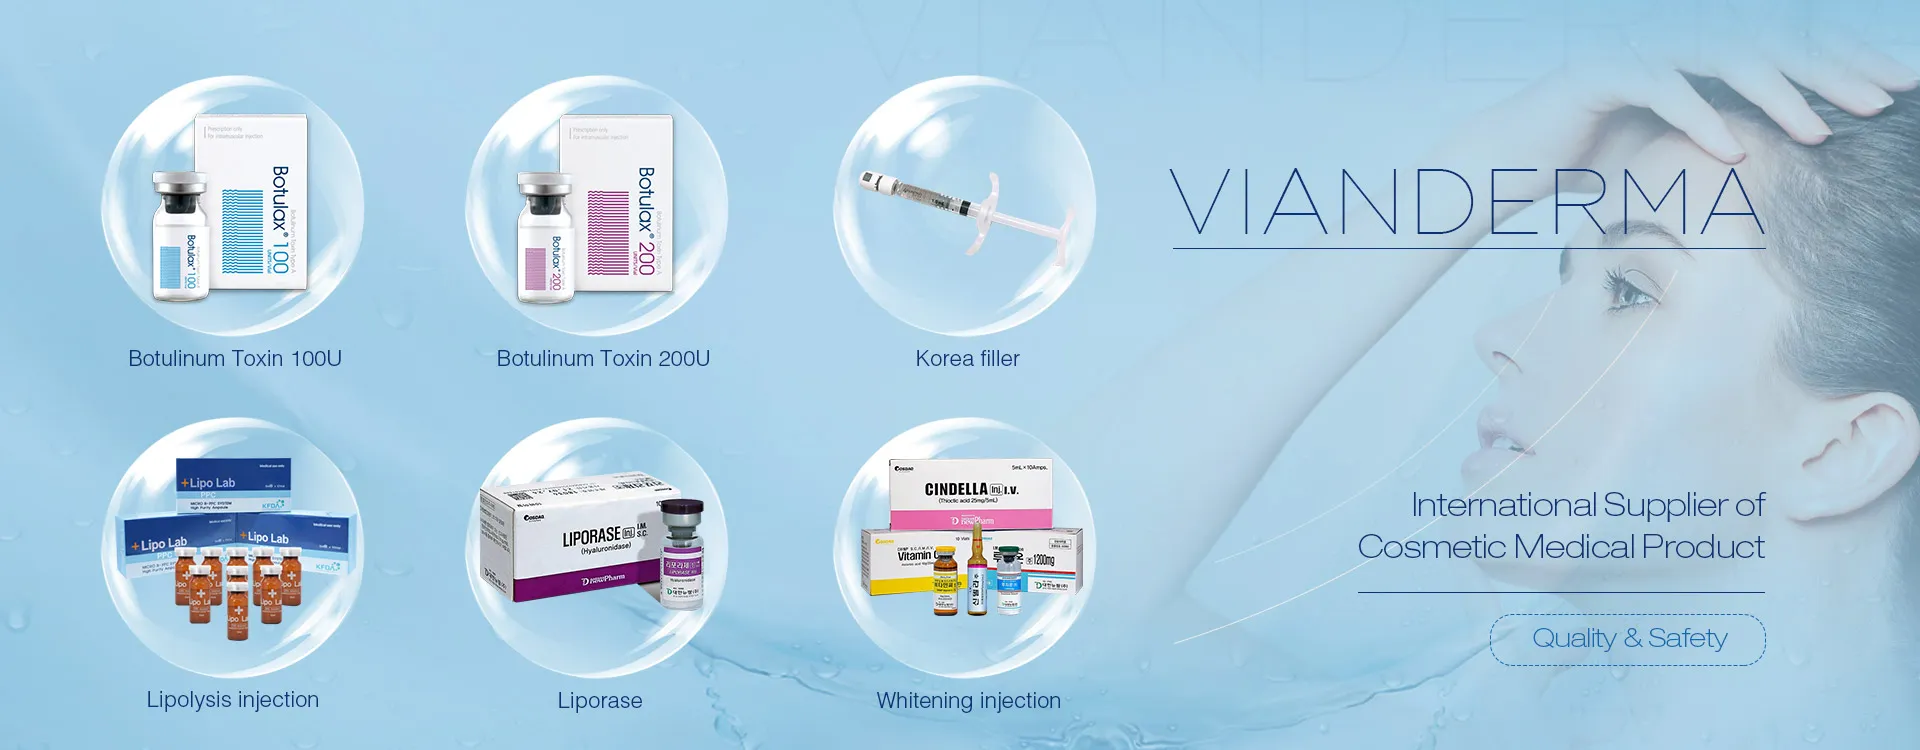 VIANDERMA - Internationale leverancier van cosmetische medische producten